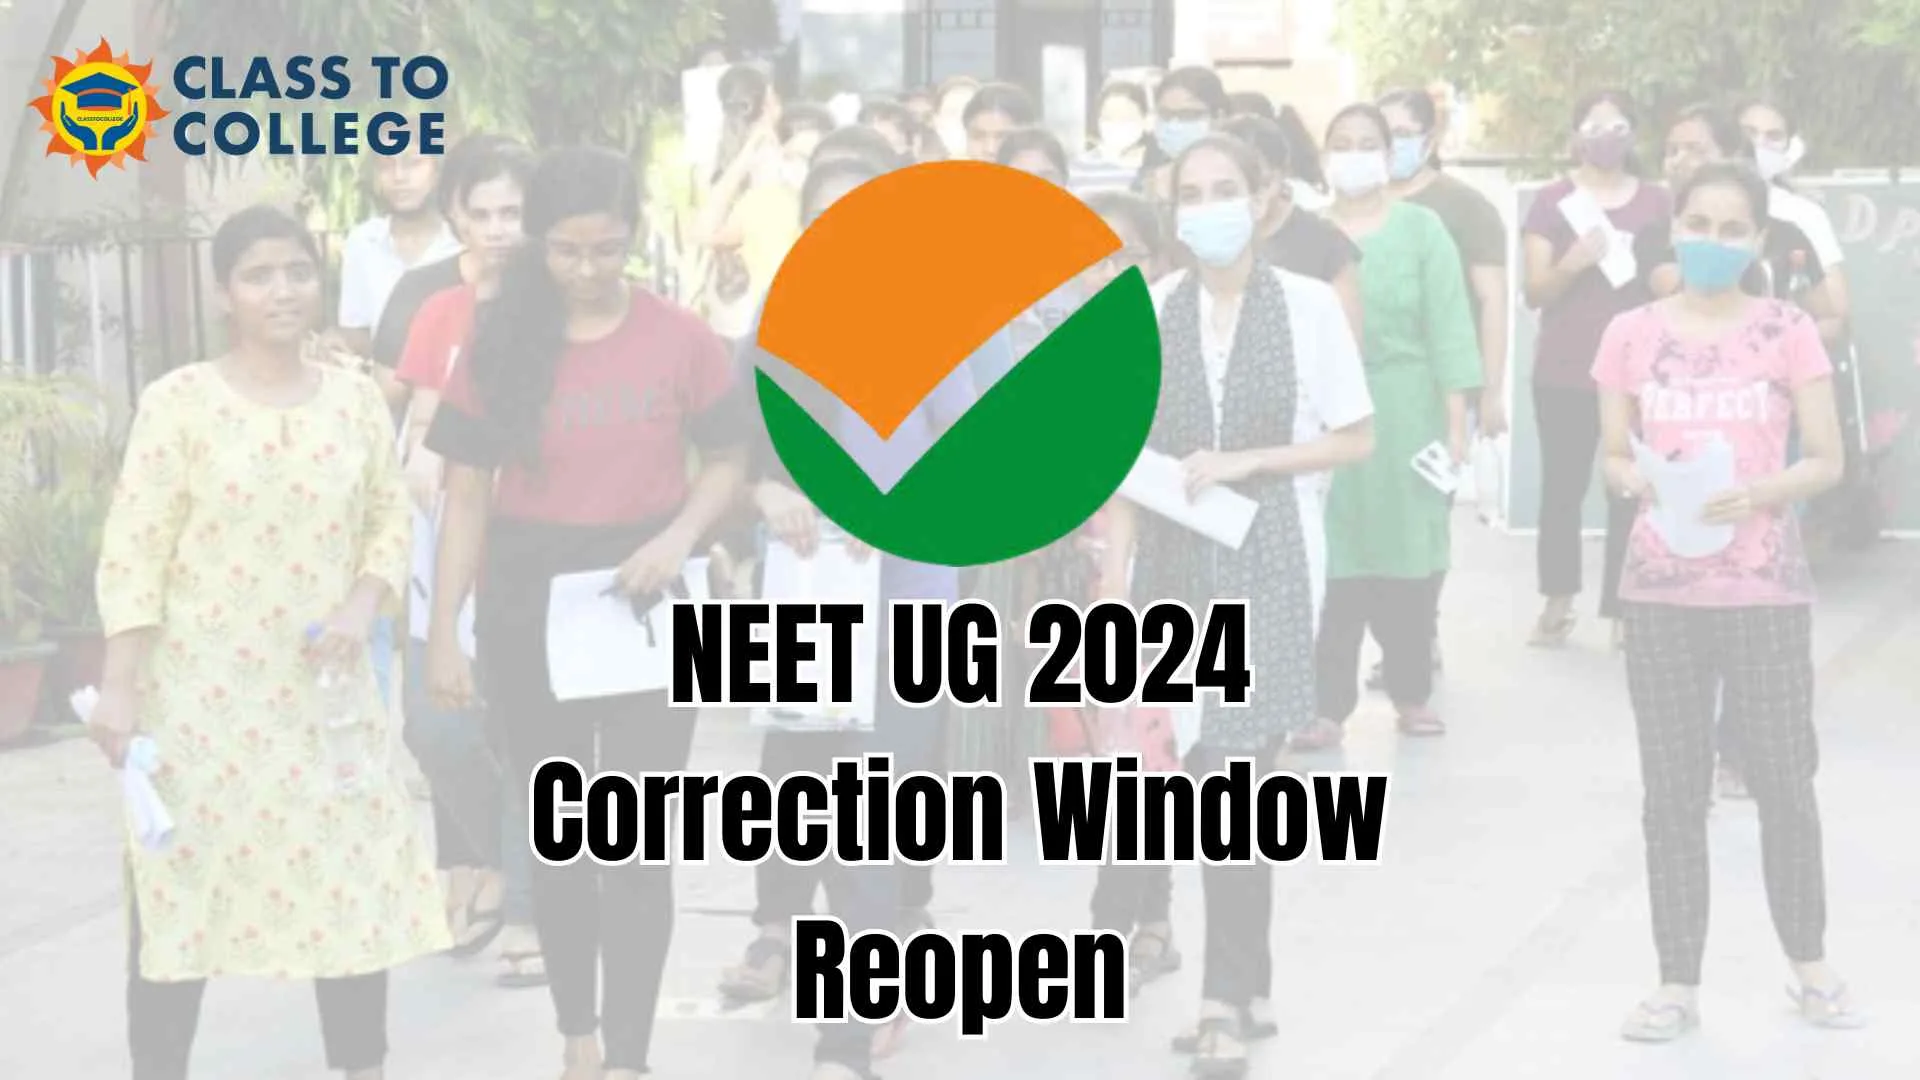 NEET UG 2024 Correction Window Reopened